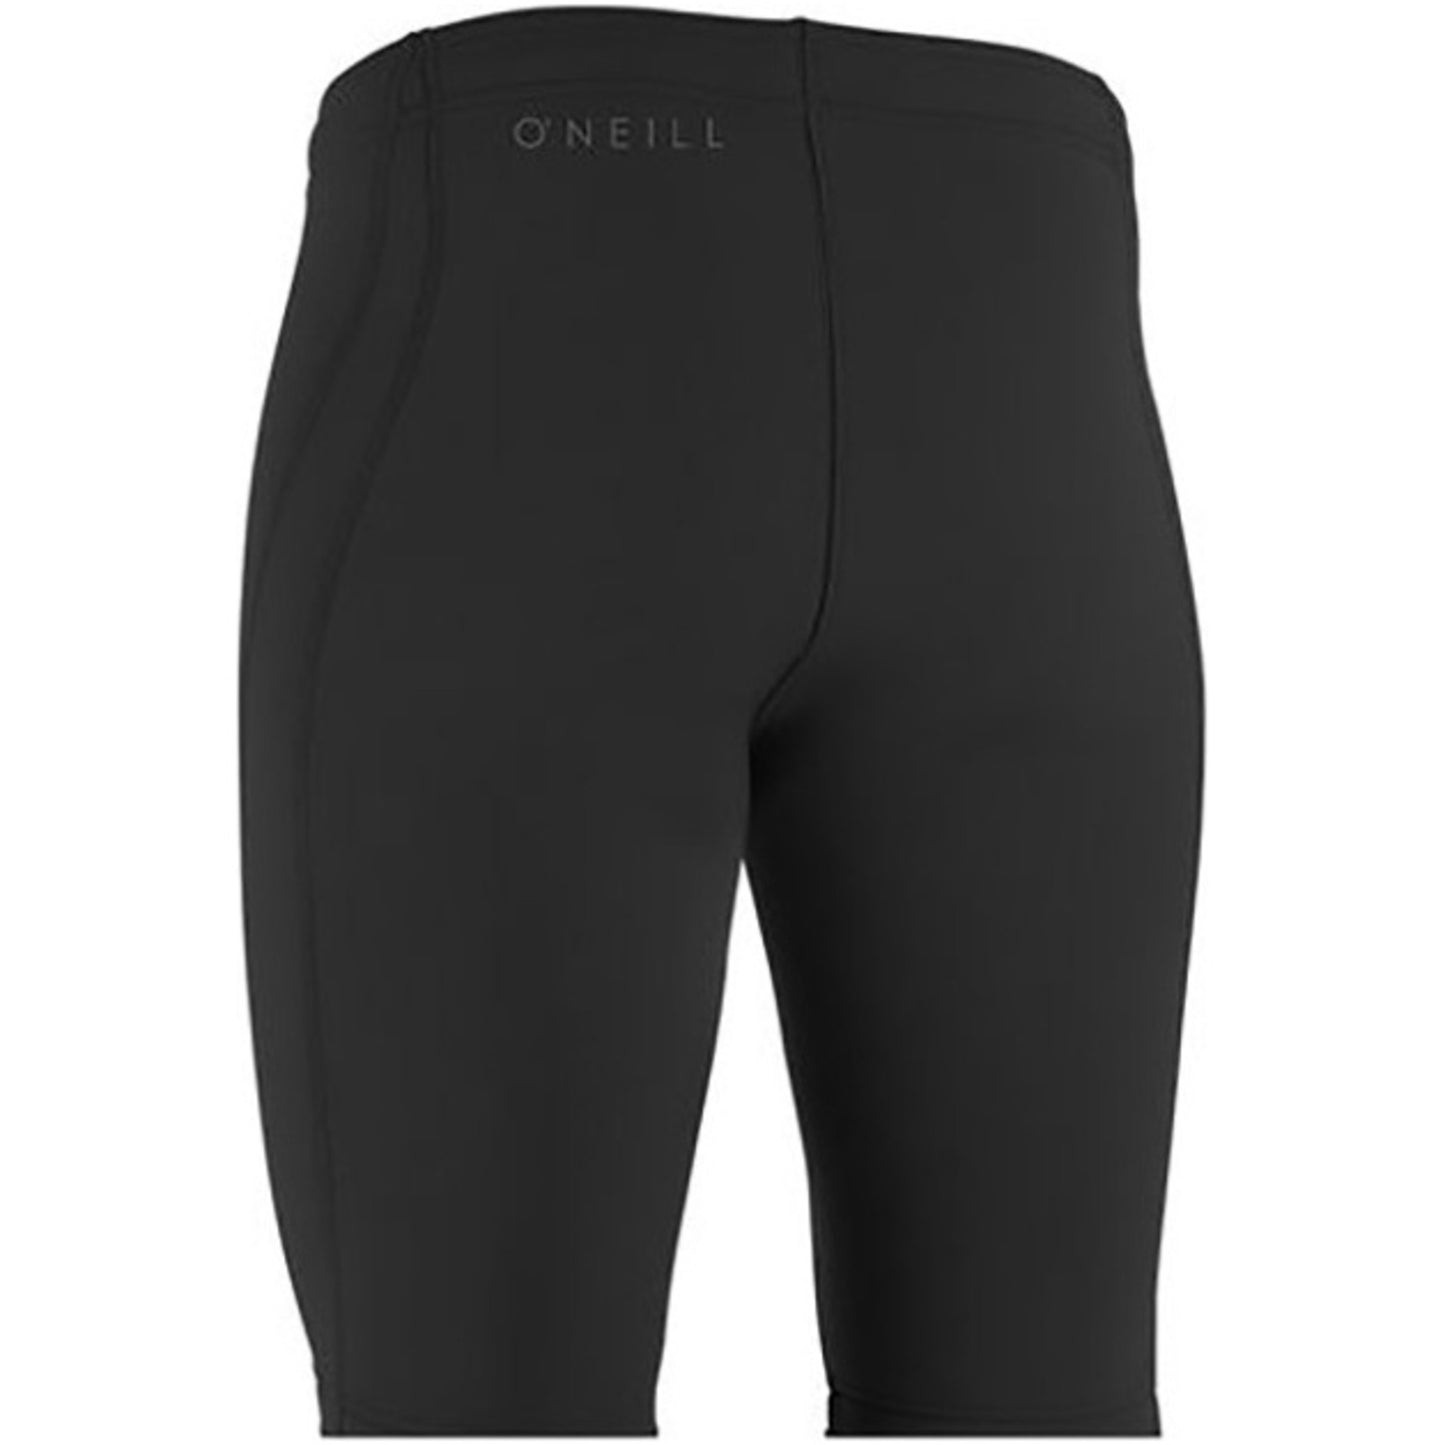 O'Neill Reactor-2 1.5mm Neoprene Shorts - Men's